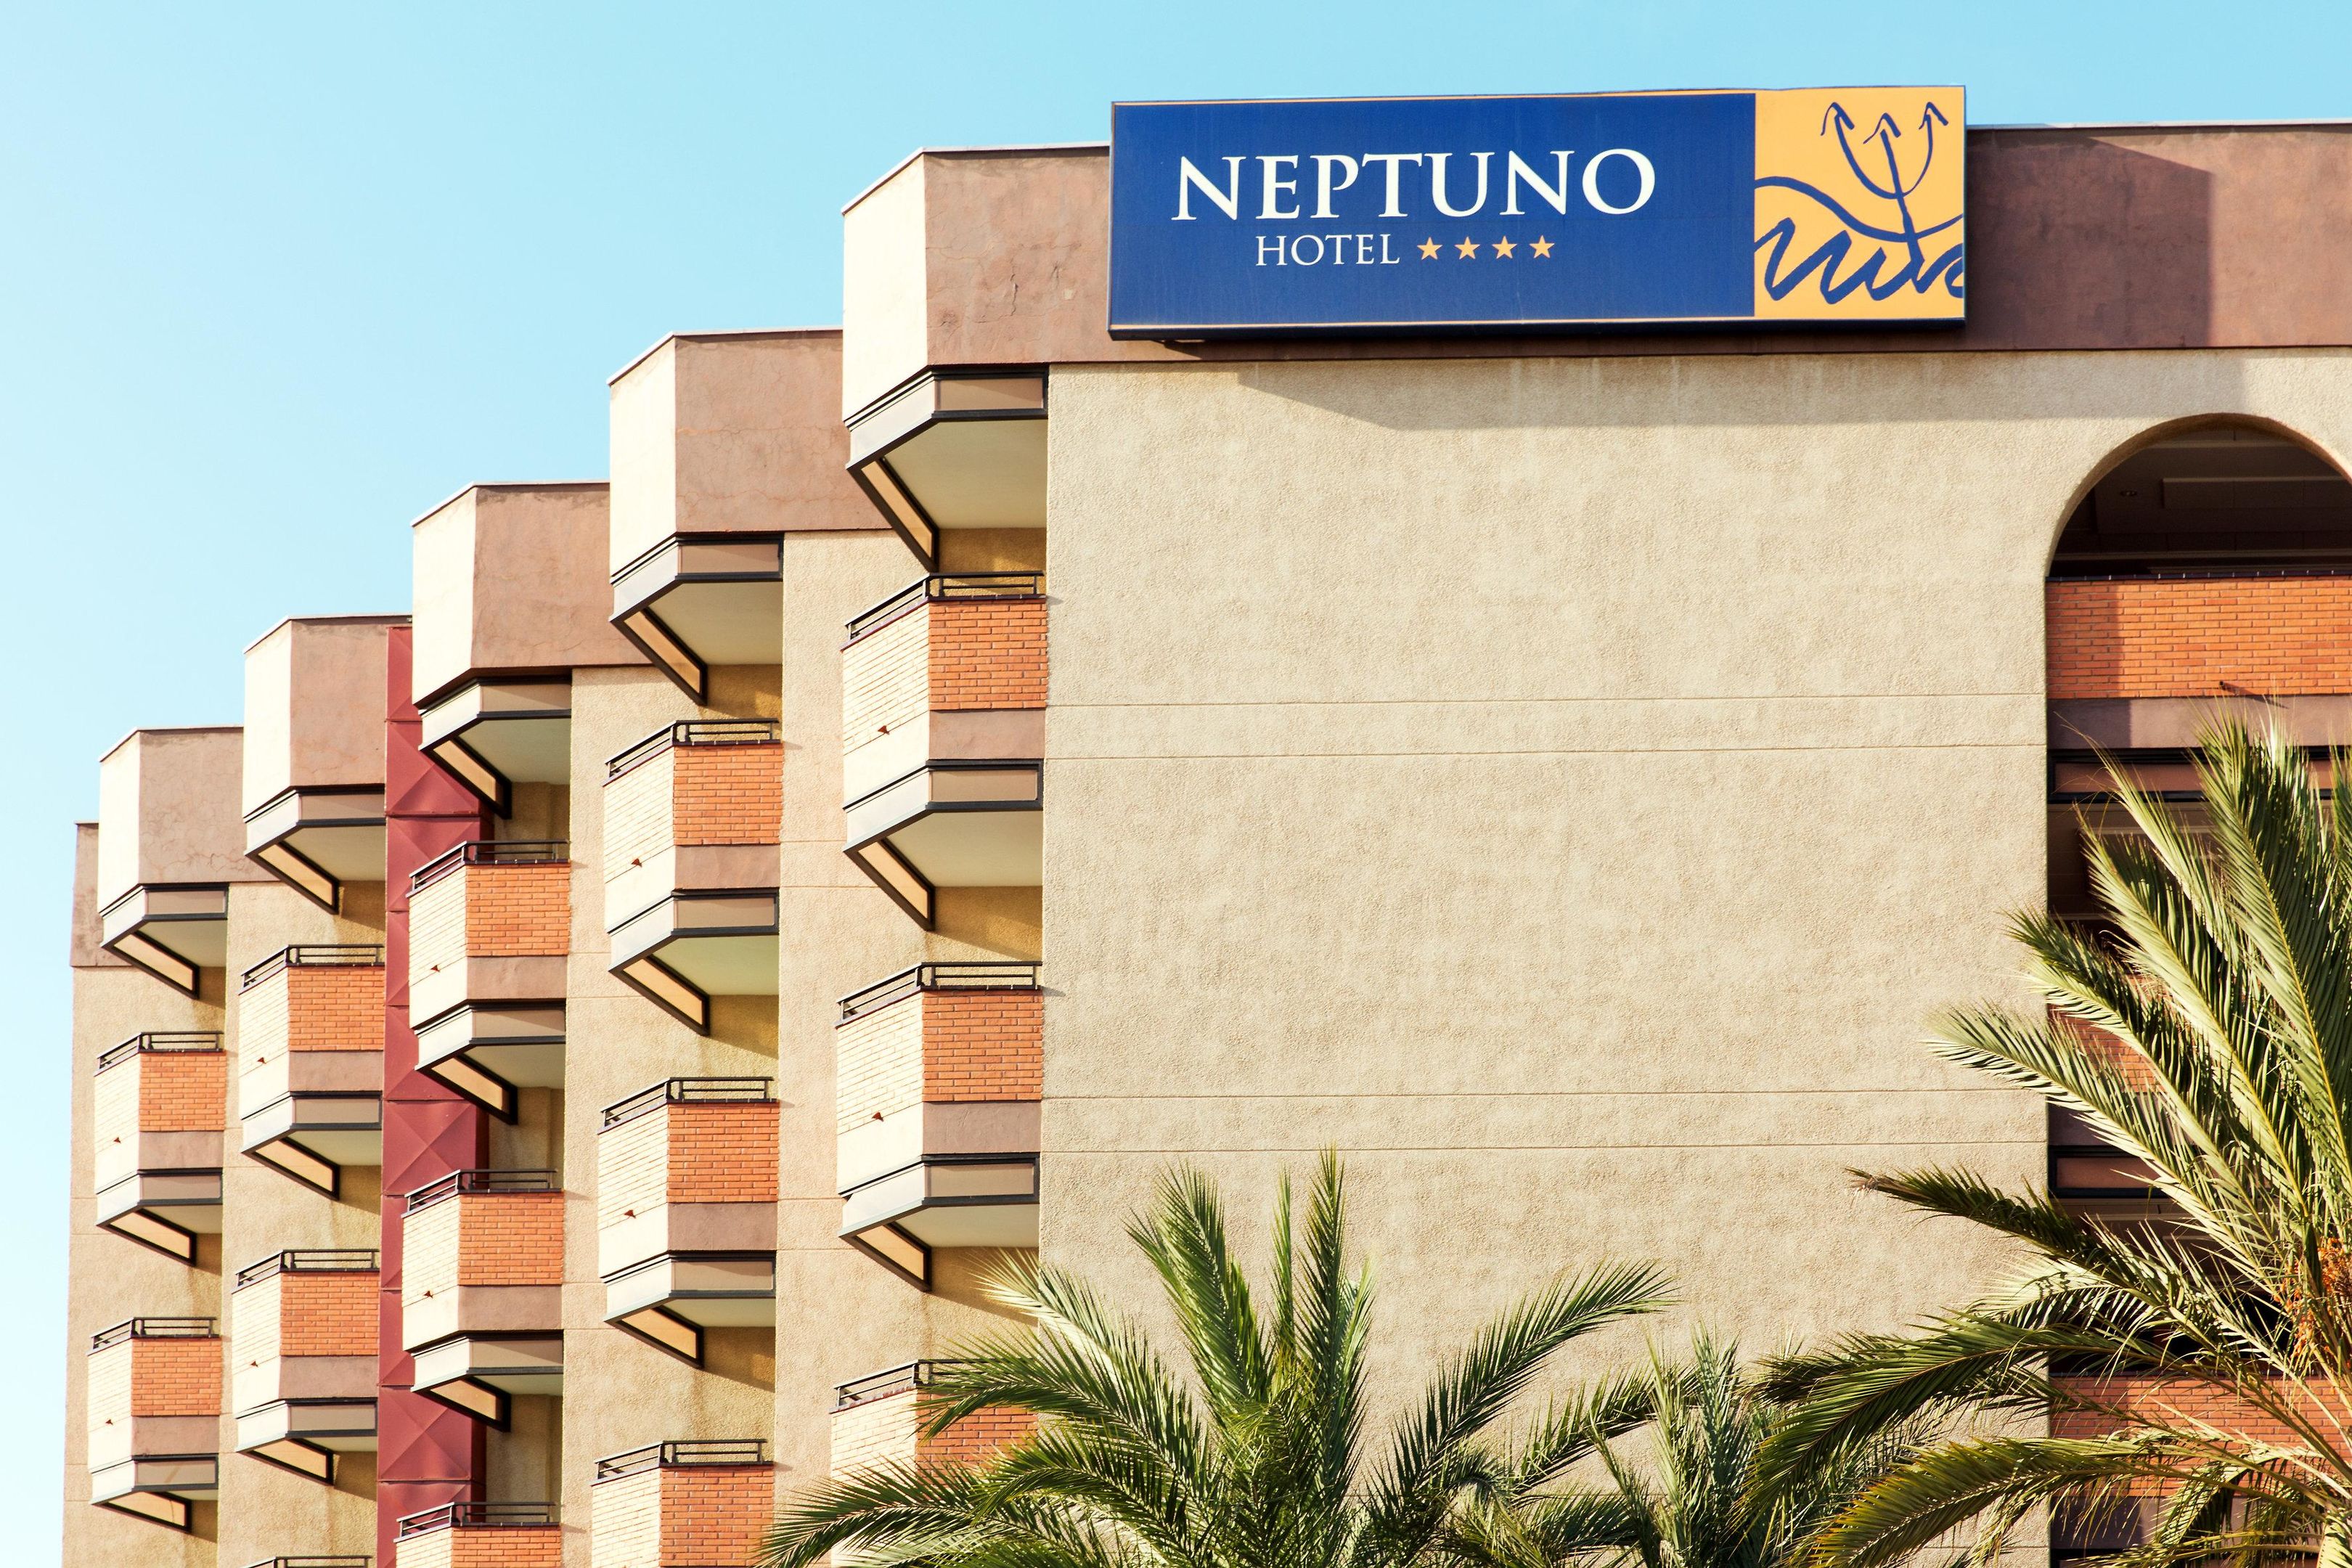 Mur Hotel Neptuno Photo